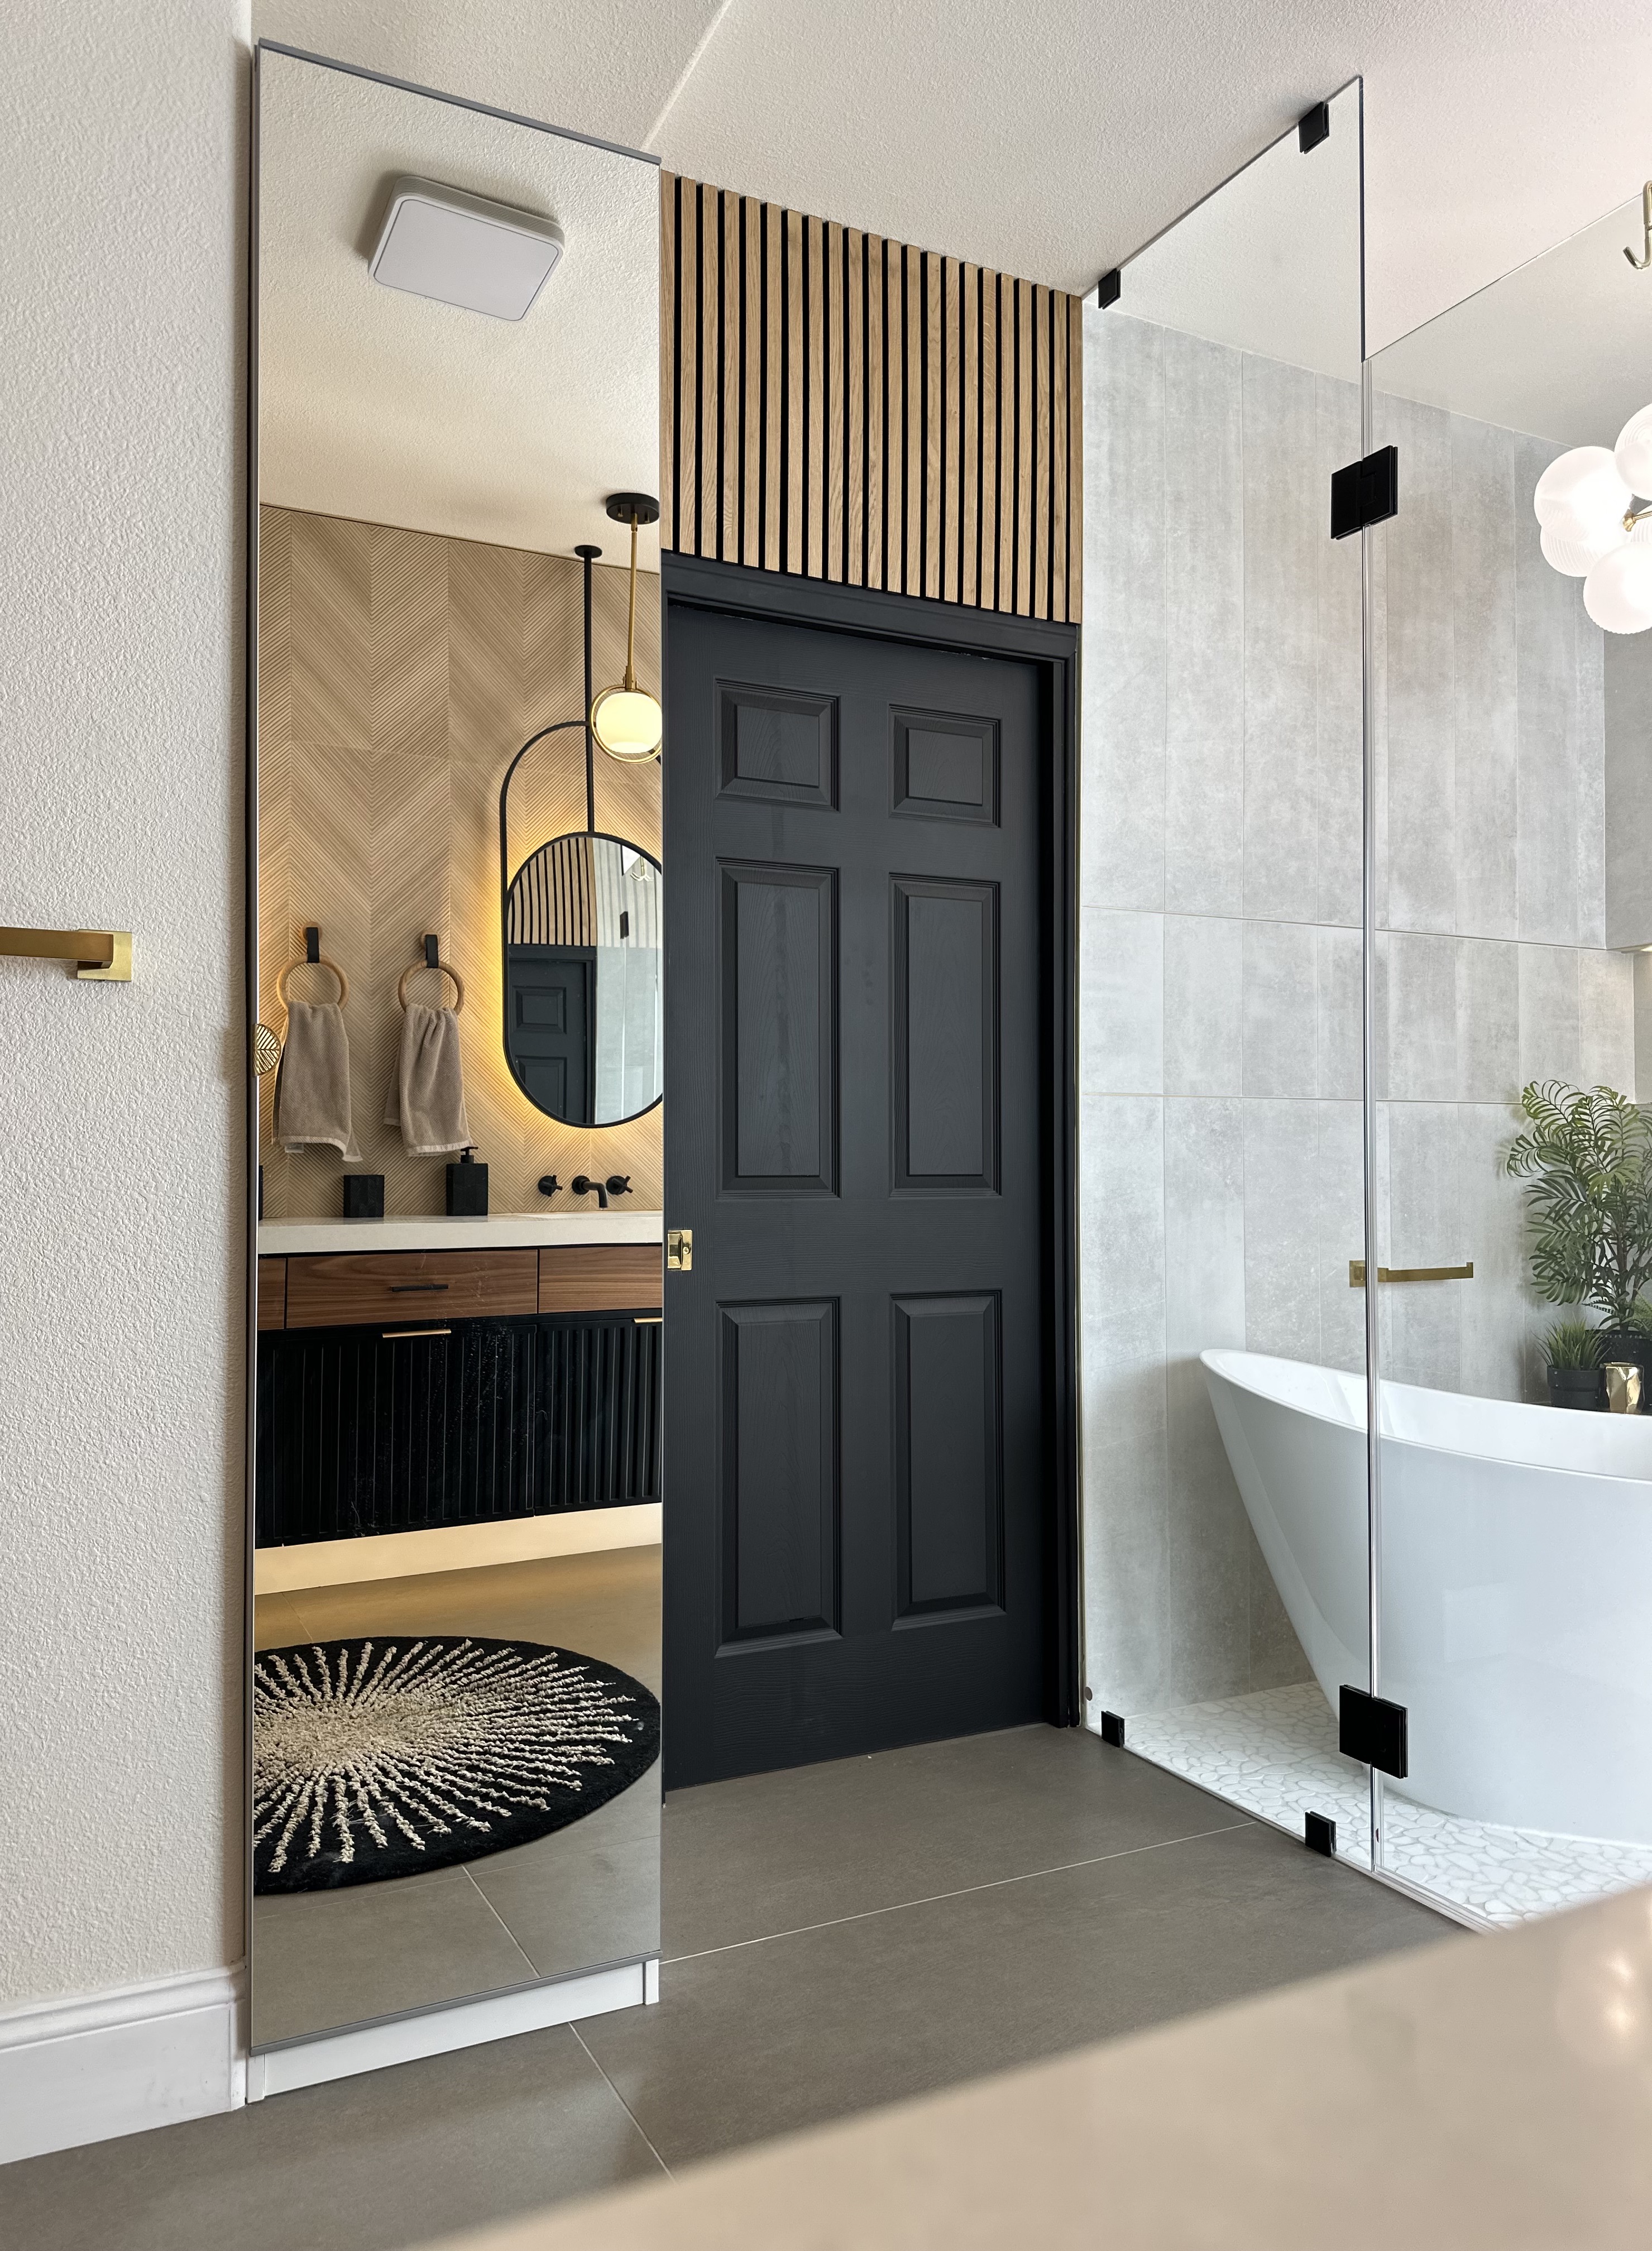 Best Residential Bathroom Design Over 75 sq ft - 02